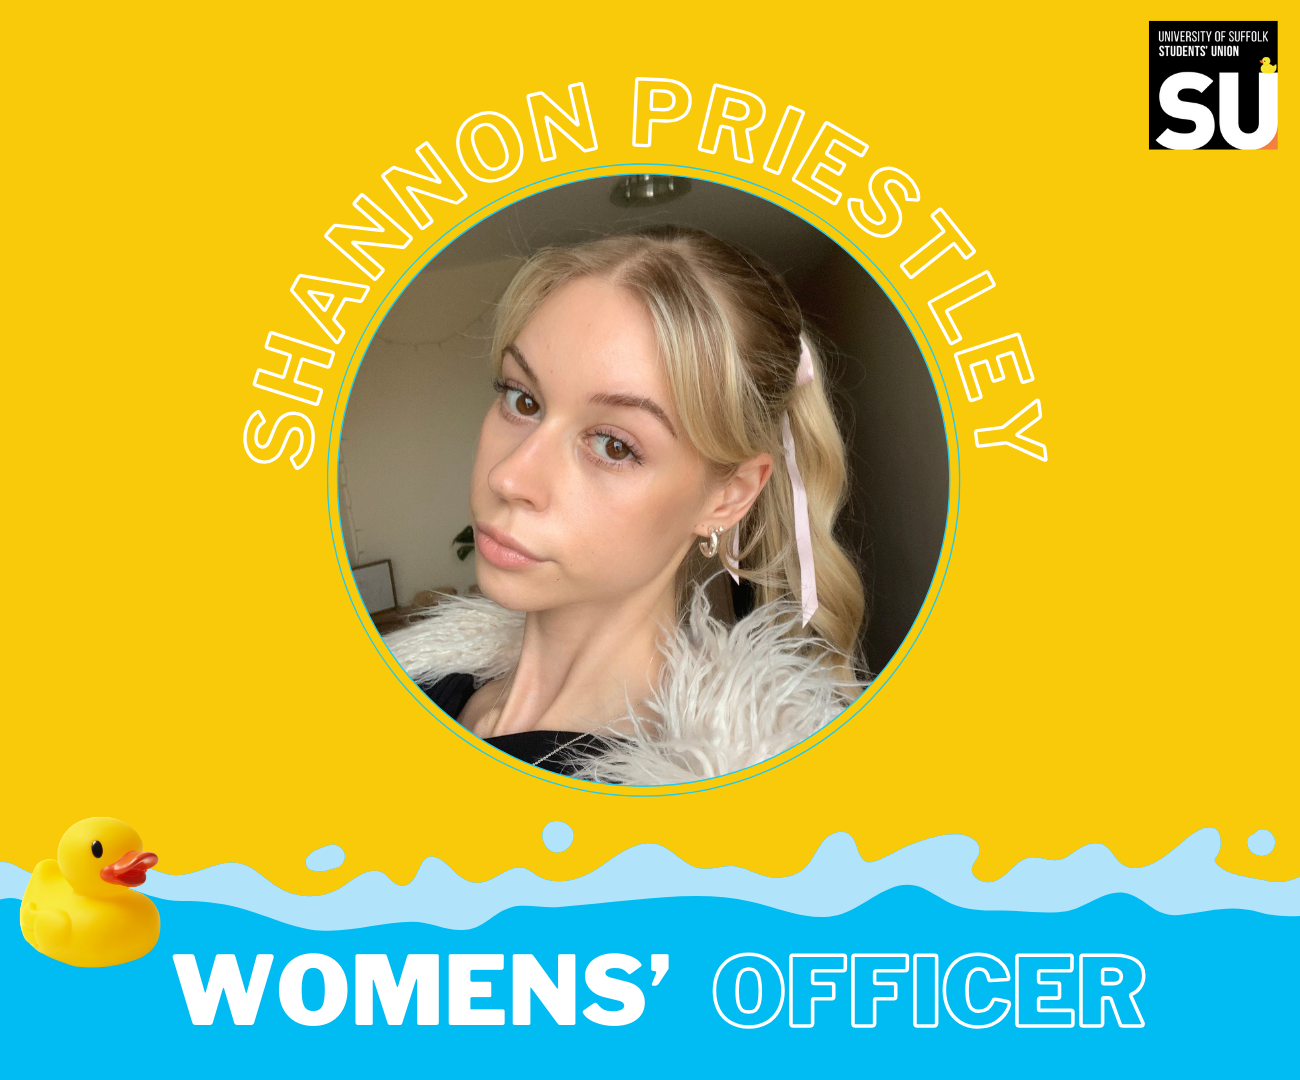 Shannon Women's Officer